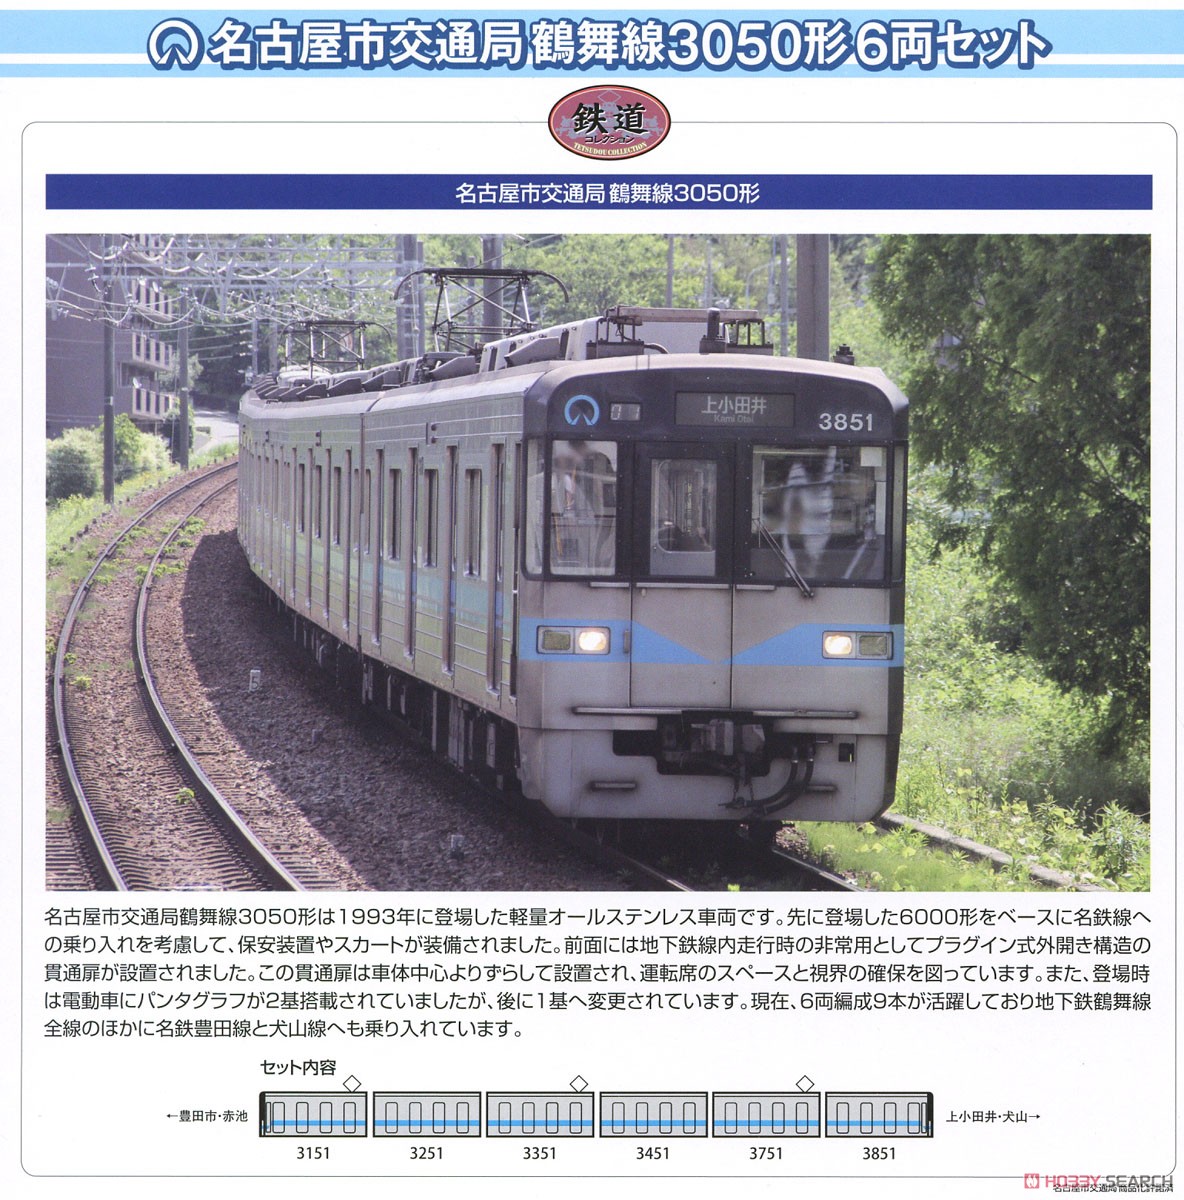 鉄道コレクション 名古屋市交通局 鶴舞線 3050形 (6両セット) (鉄道模型) 解説1